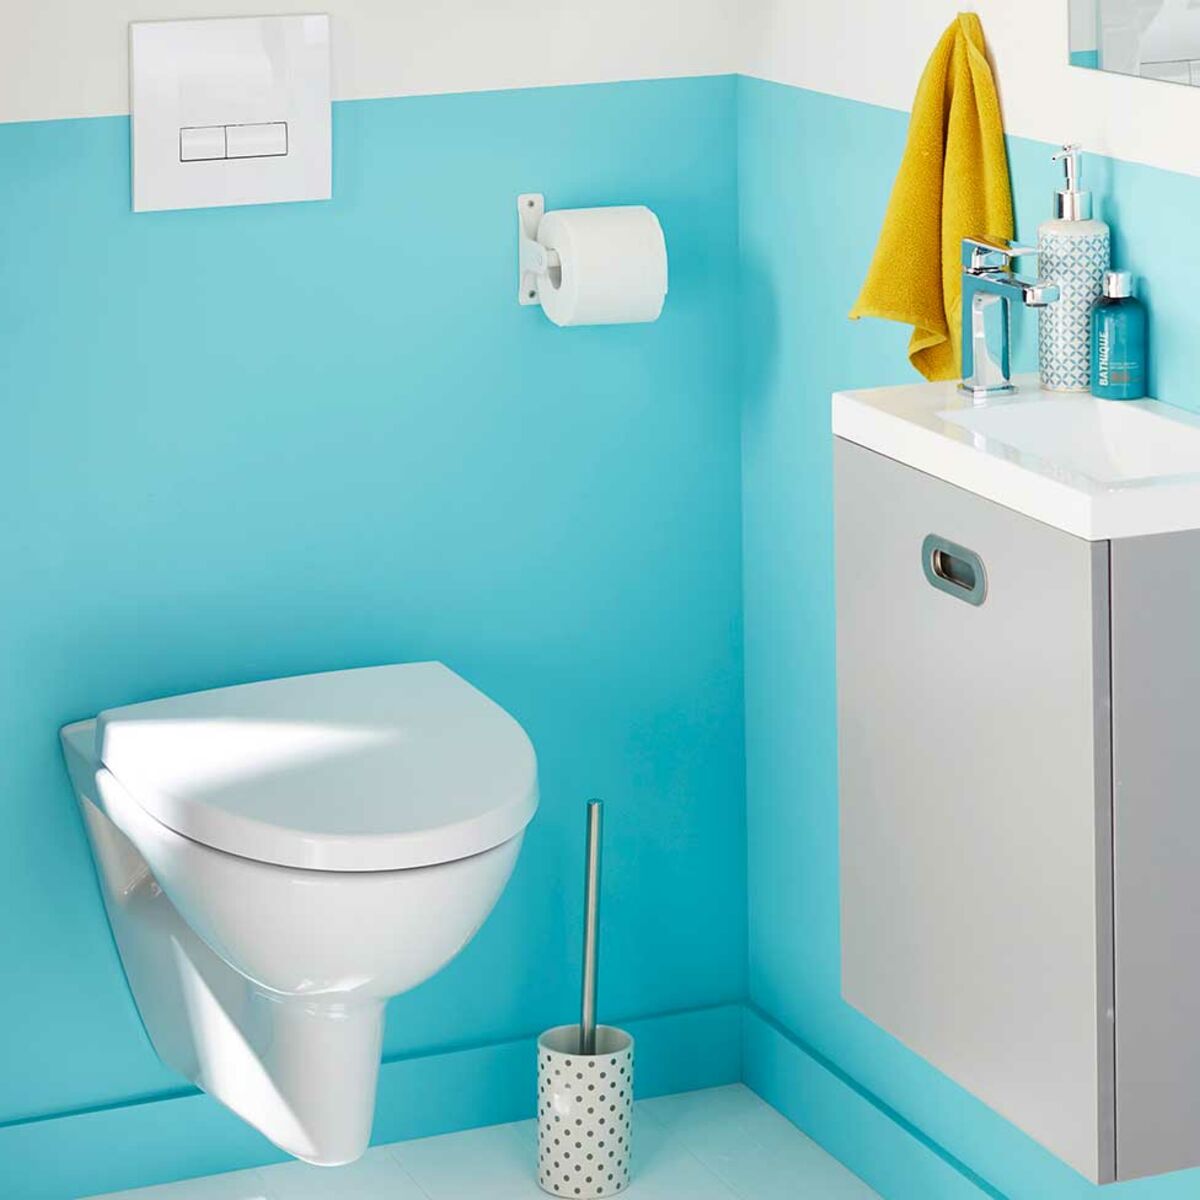 Toilettes suspendues : comment transformer ses WC en espace déco